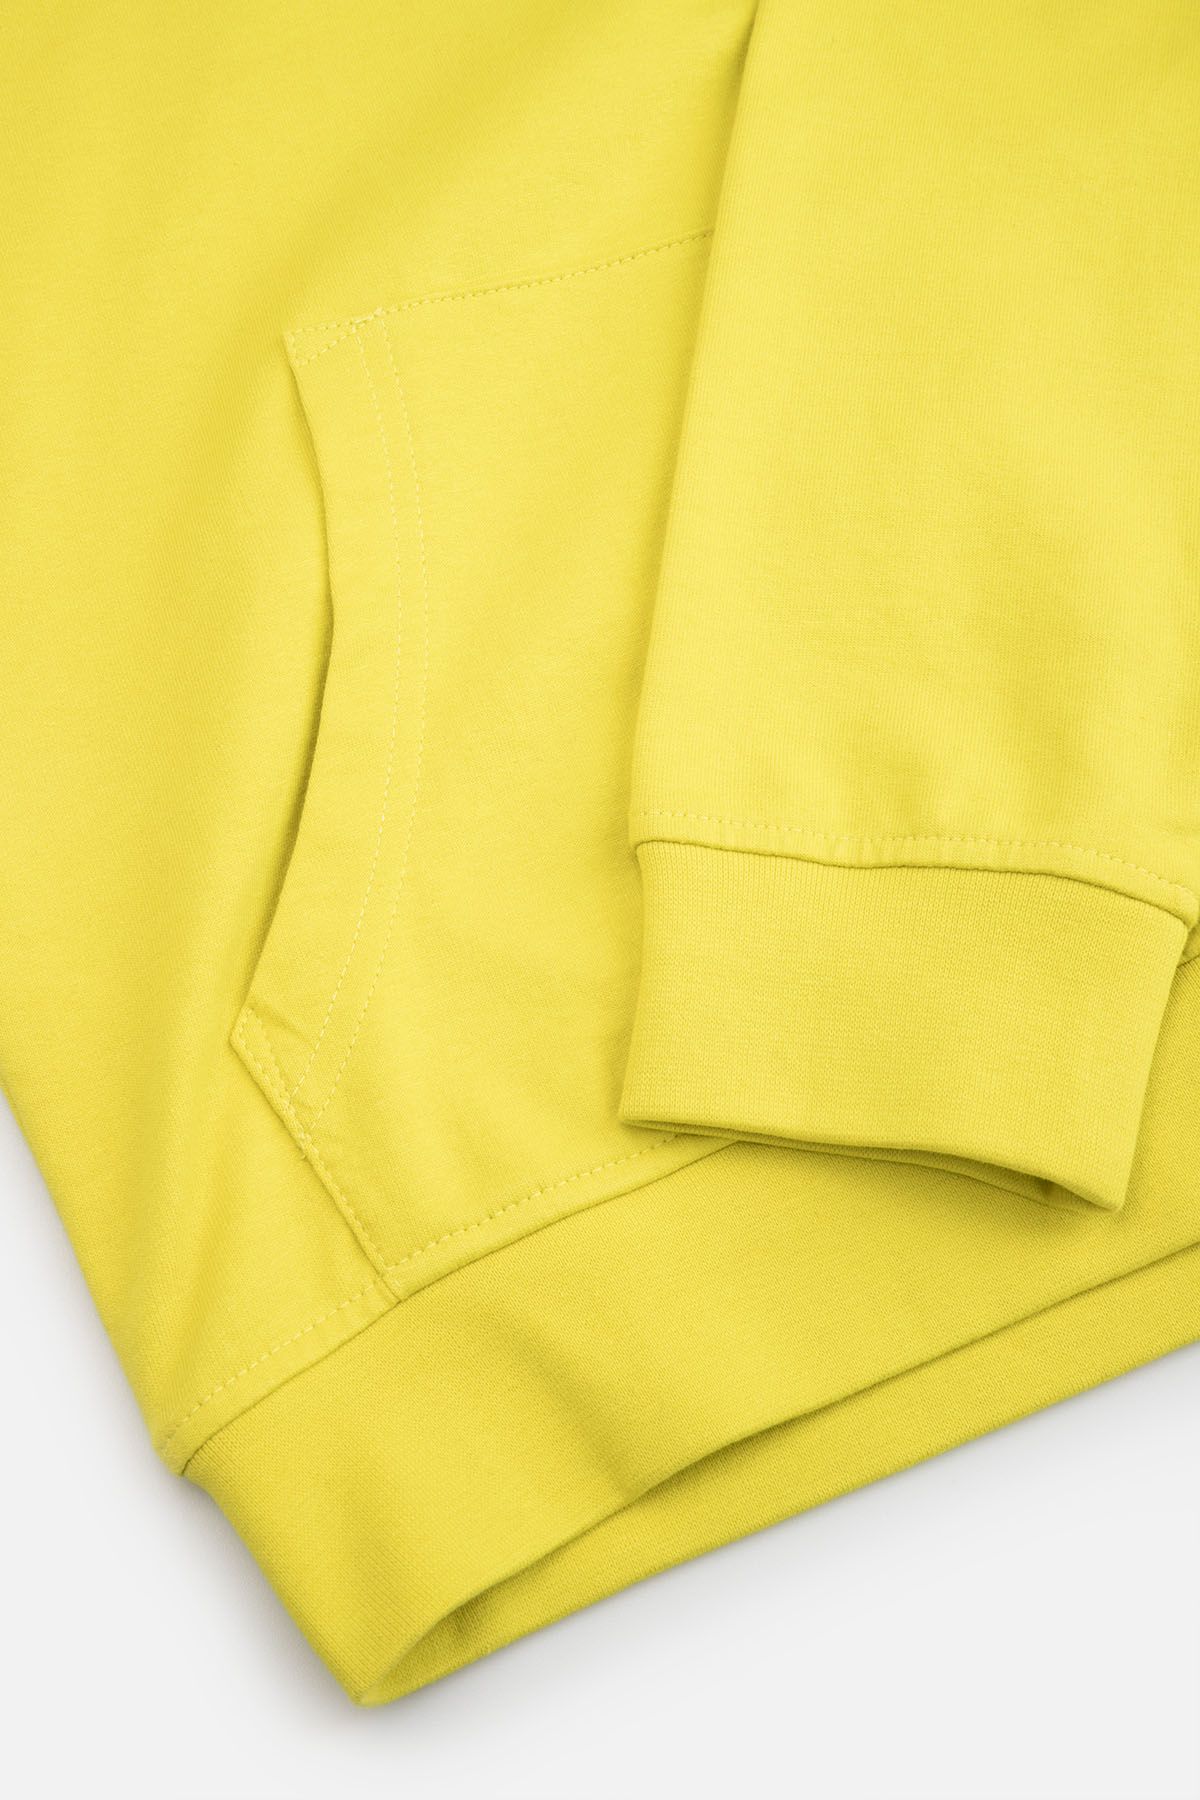 Bluza dresowa limonkowa z kieszenią typu kangurka 2221875